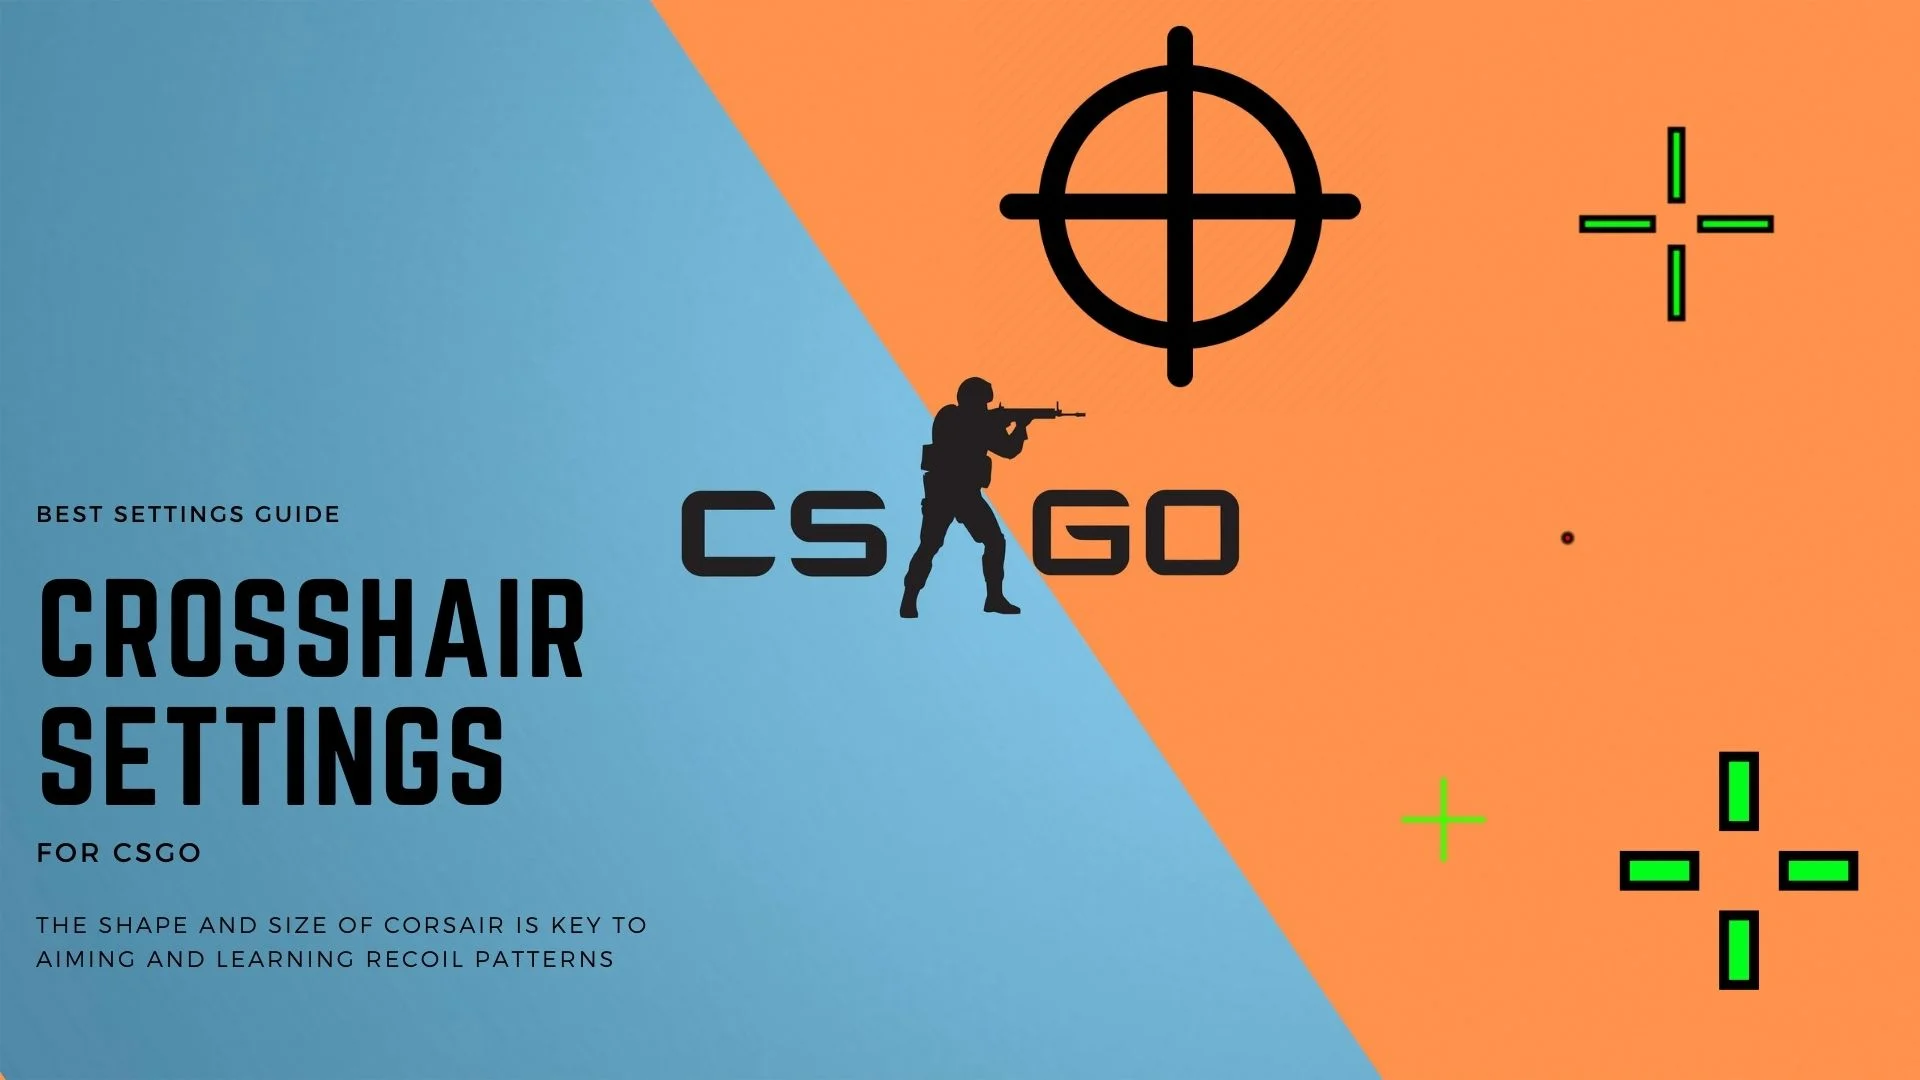 Crosshair-Indstillinger for CSGO